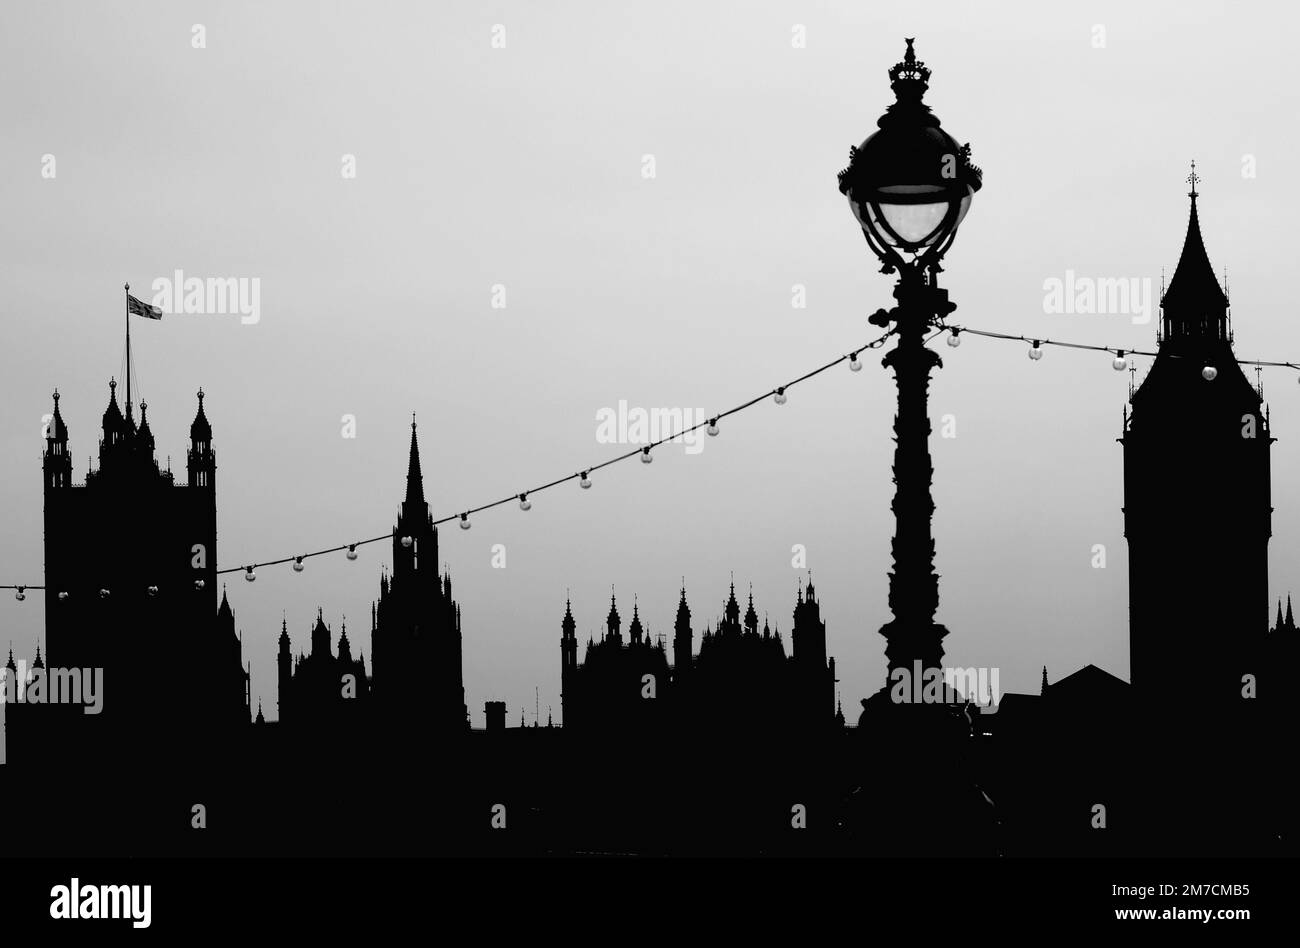 La silhouette du Westminster Palace, Londres, Royaume-Uni, en monochrome, avec lampadaire, vue de la Banque du Sud Banque D'Images